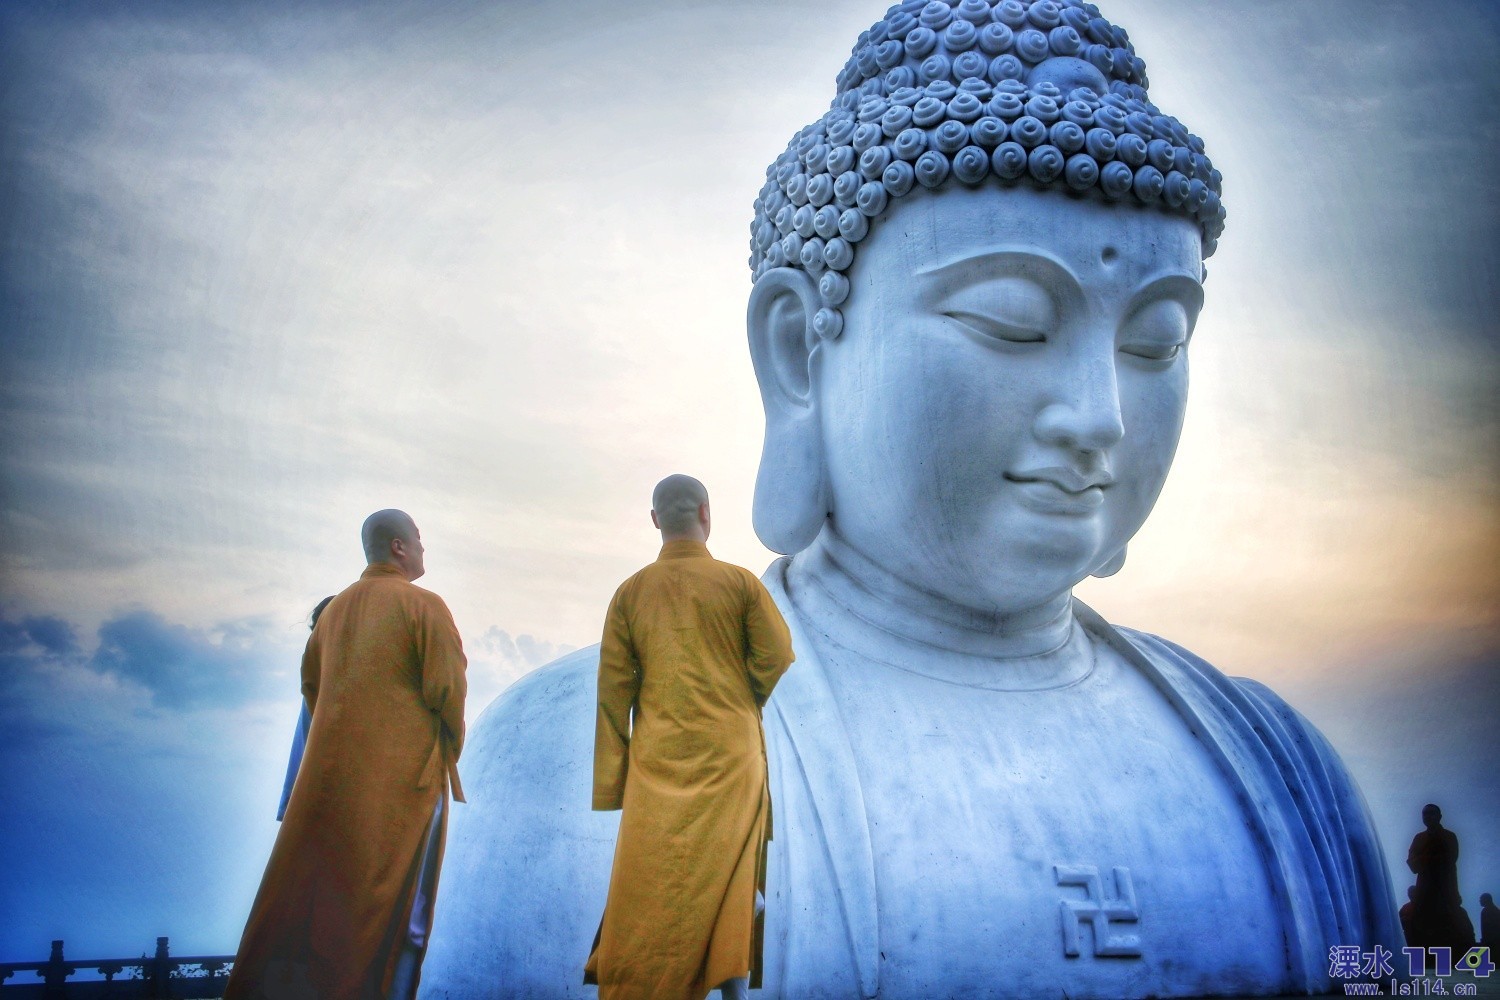 人, 佛教, 信仰 的免費圖庫相片